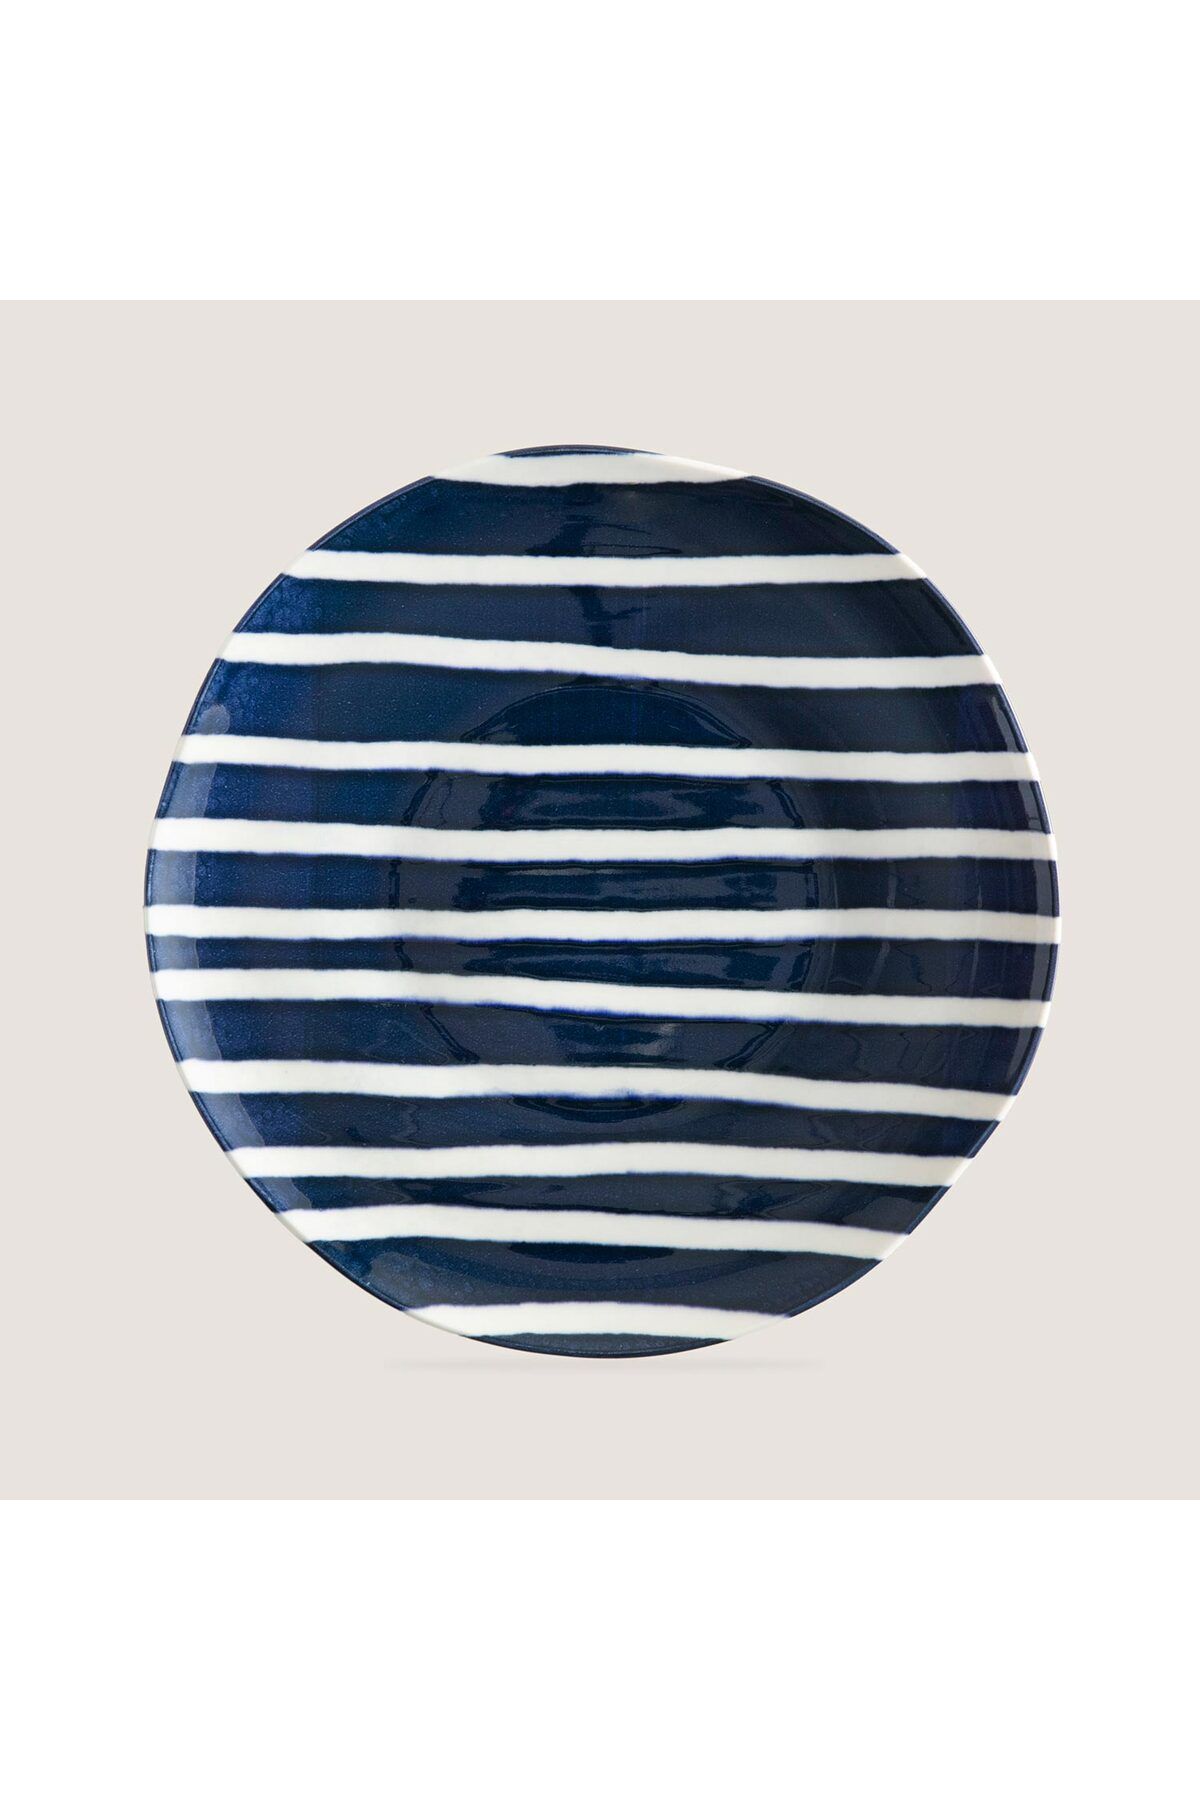 Chakra Seaside Stripe Servis Tabağı 28 Cm Mavi/Beyaz